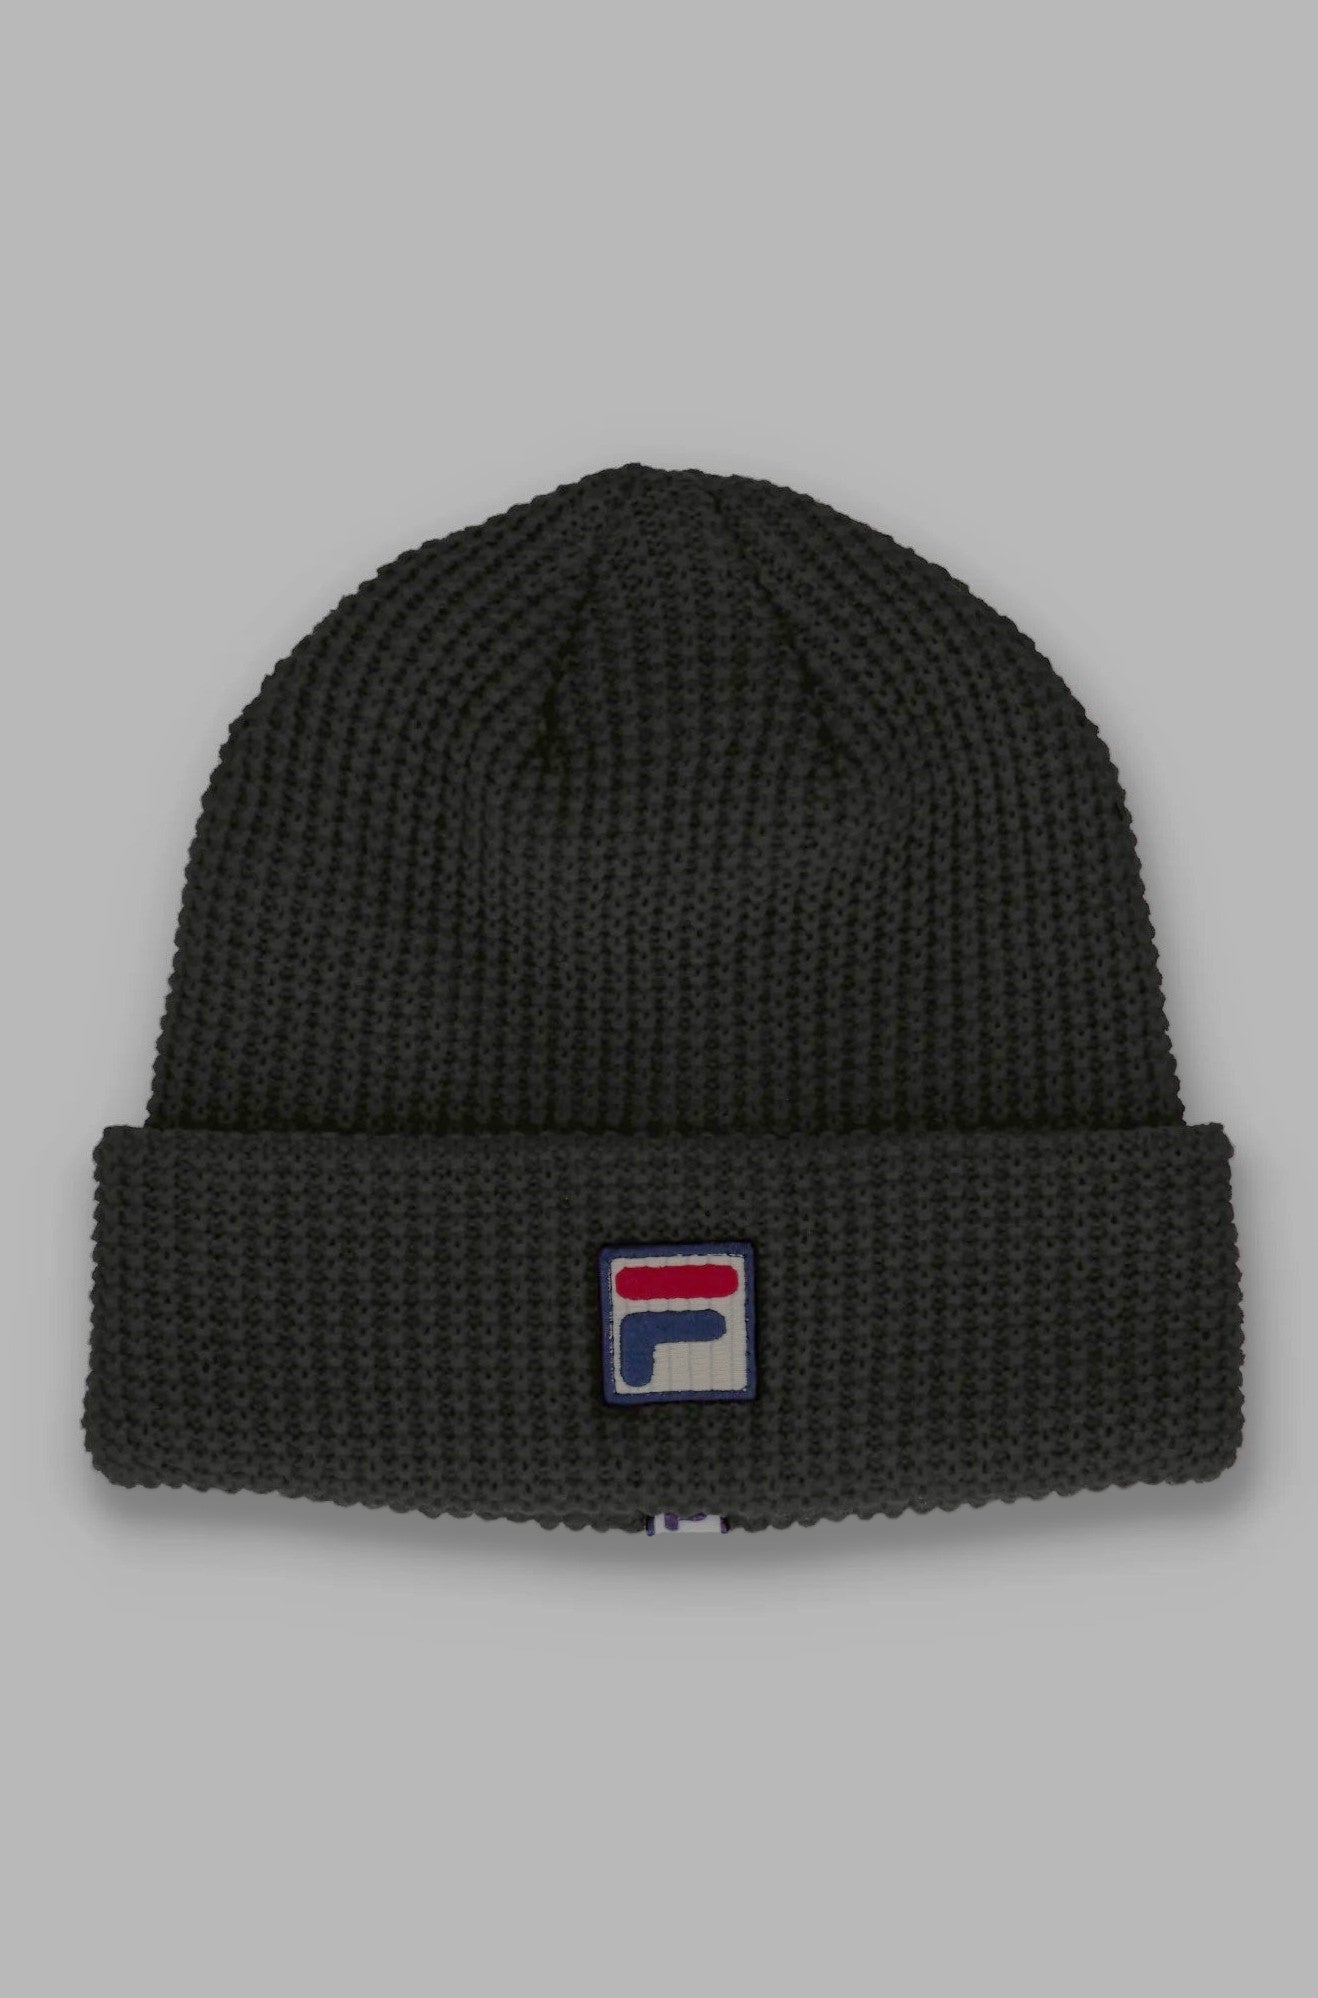 Fila Kudoslux Reverse Knit Turn Up Beanie Hat in Black - FHXF23007-001 #drkruger #dr.kruger #dr kruger